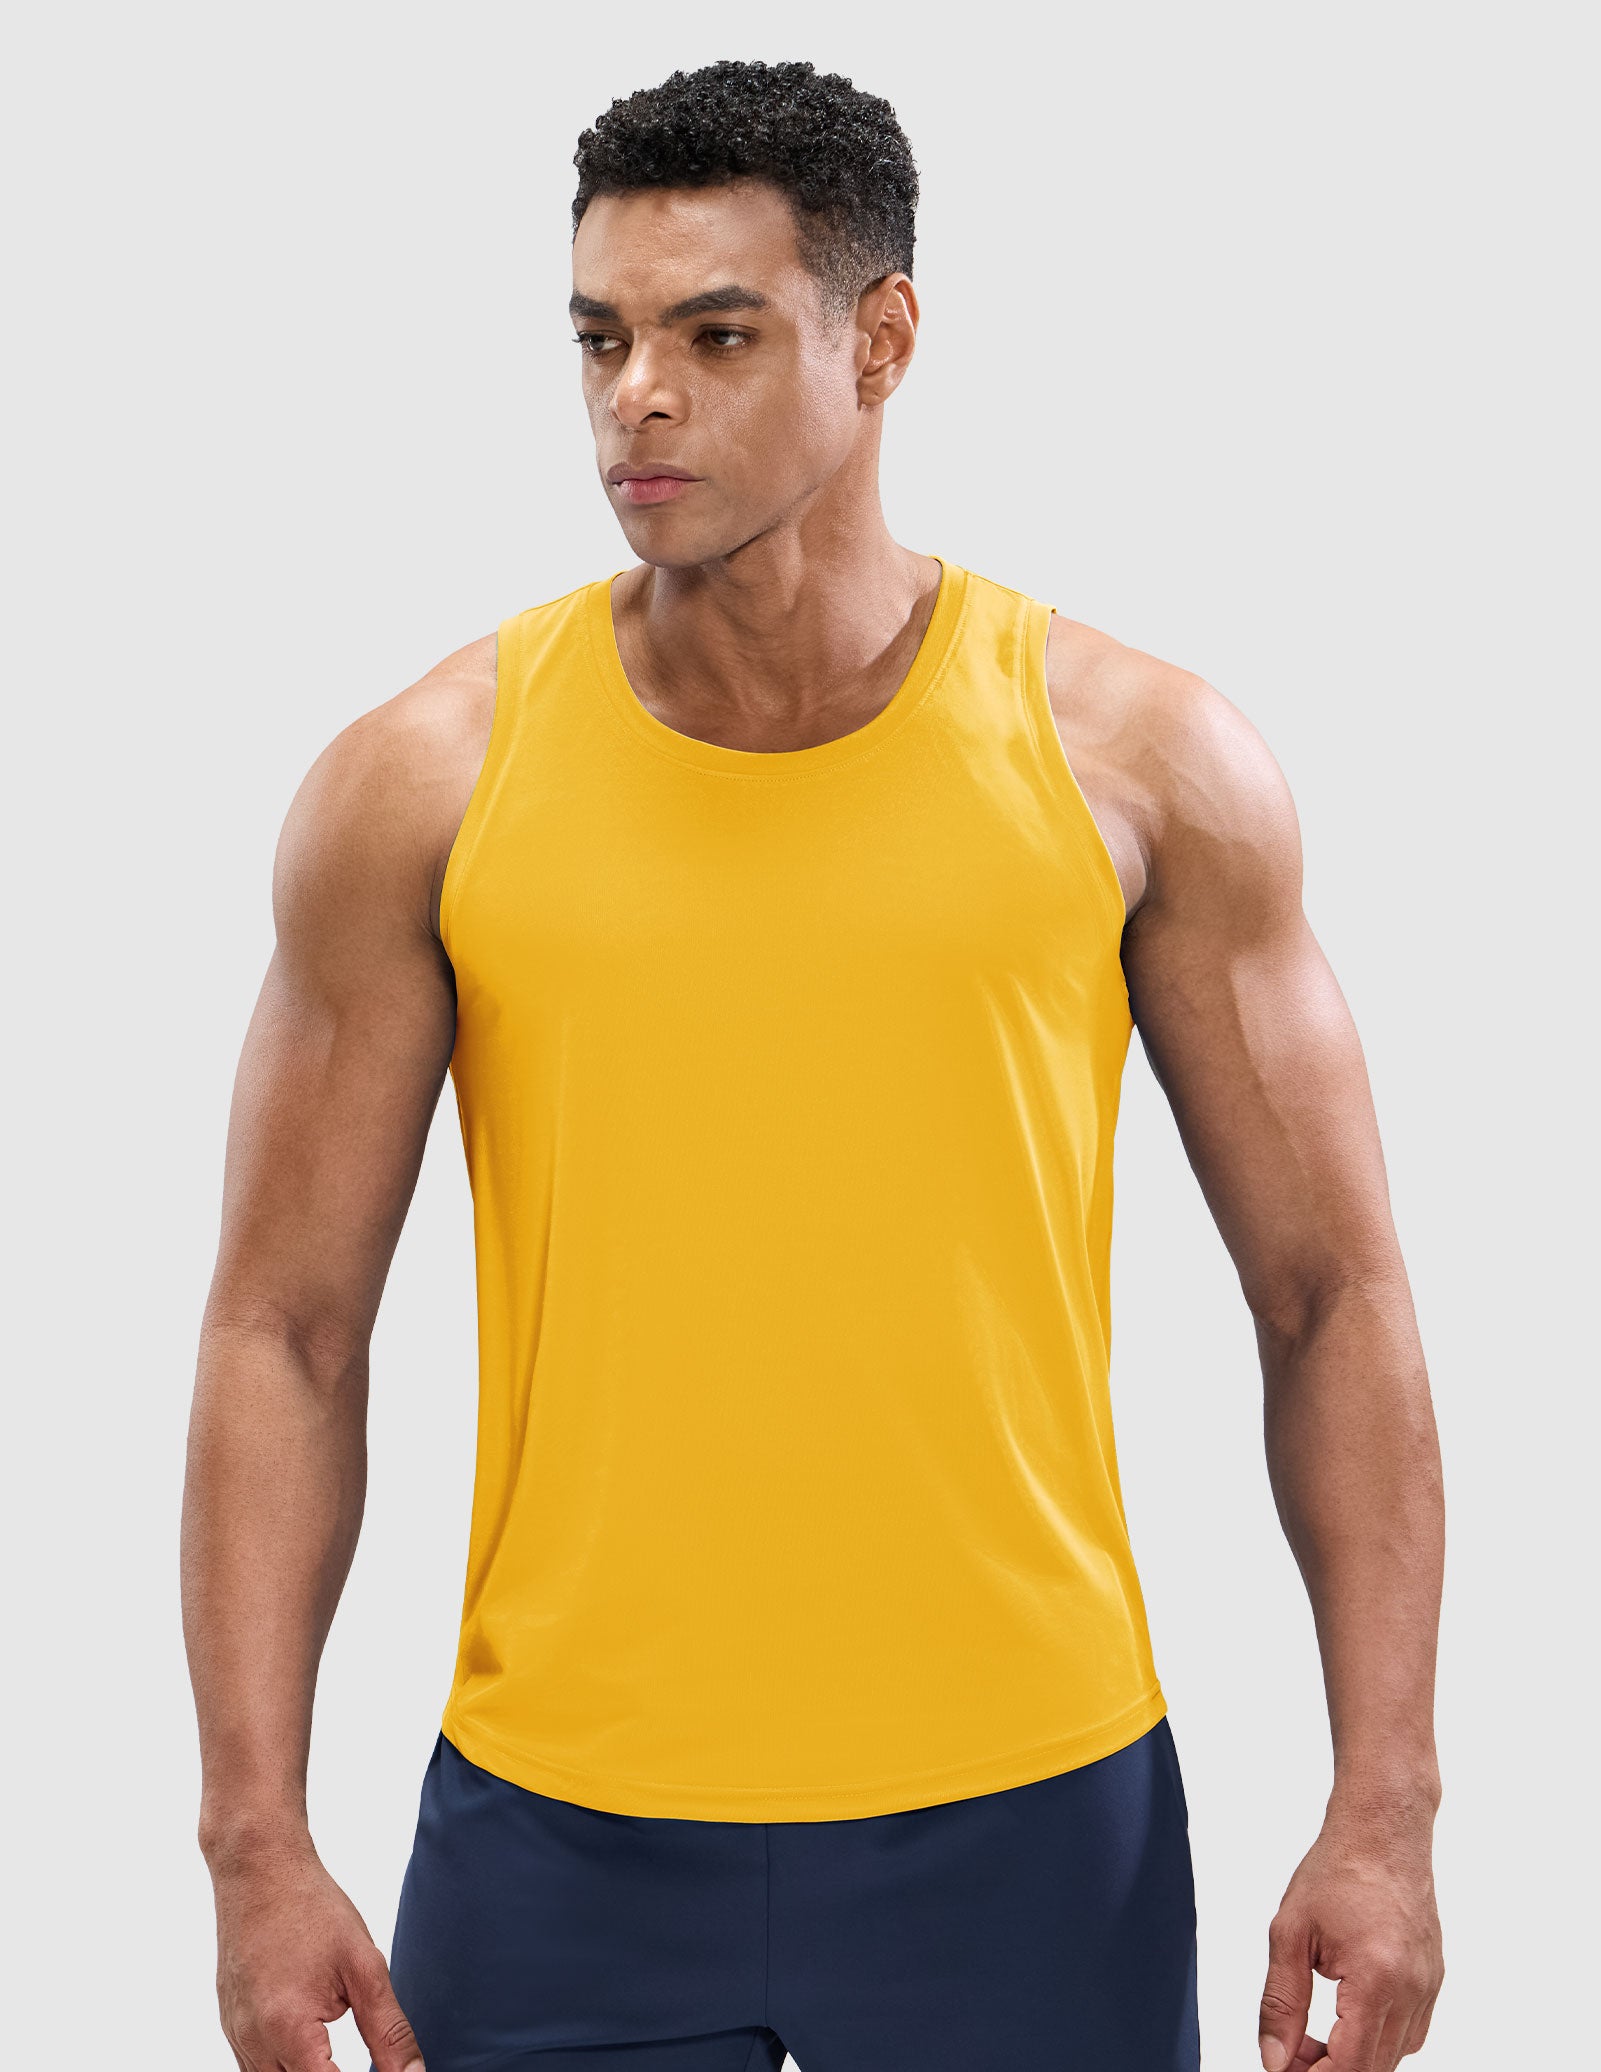 Men's Tank Tops Workout Tee Shirts